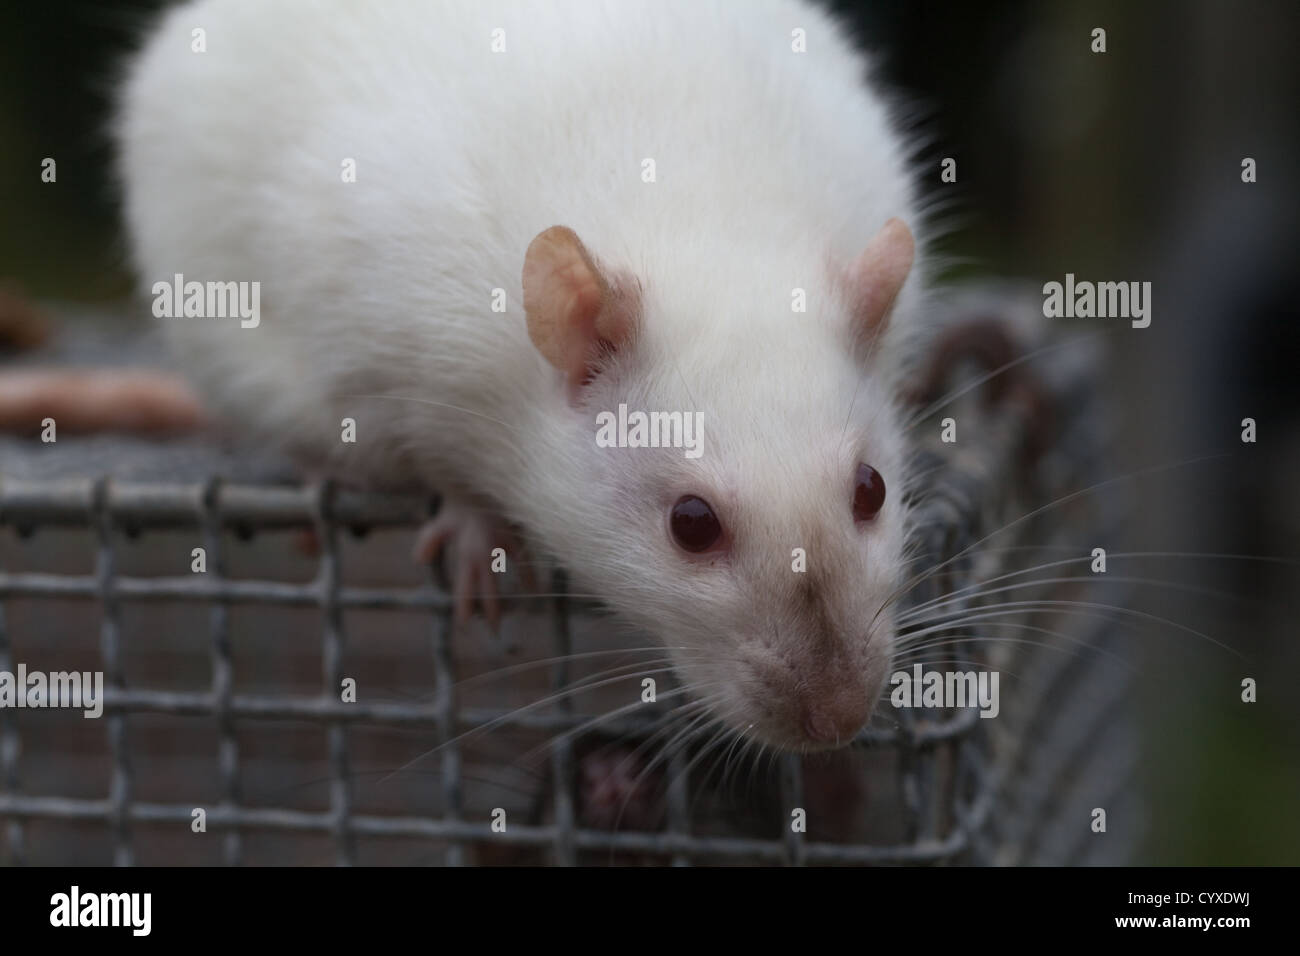 Les rats albinos (Rattus norvegicus). Femme adulte sur le haut d'une cage de laboratoire. Banque D'Images